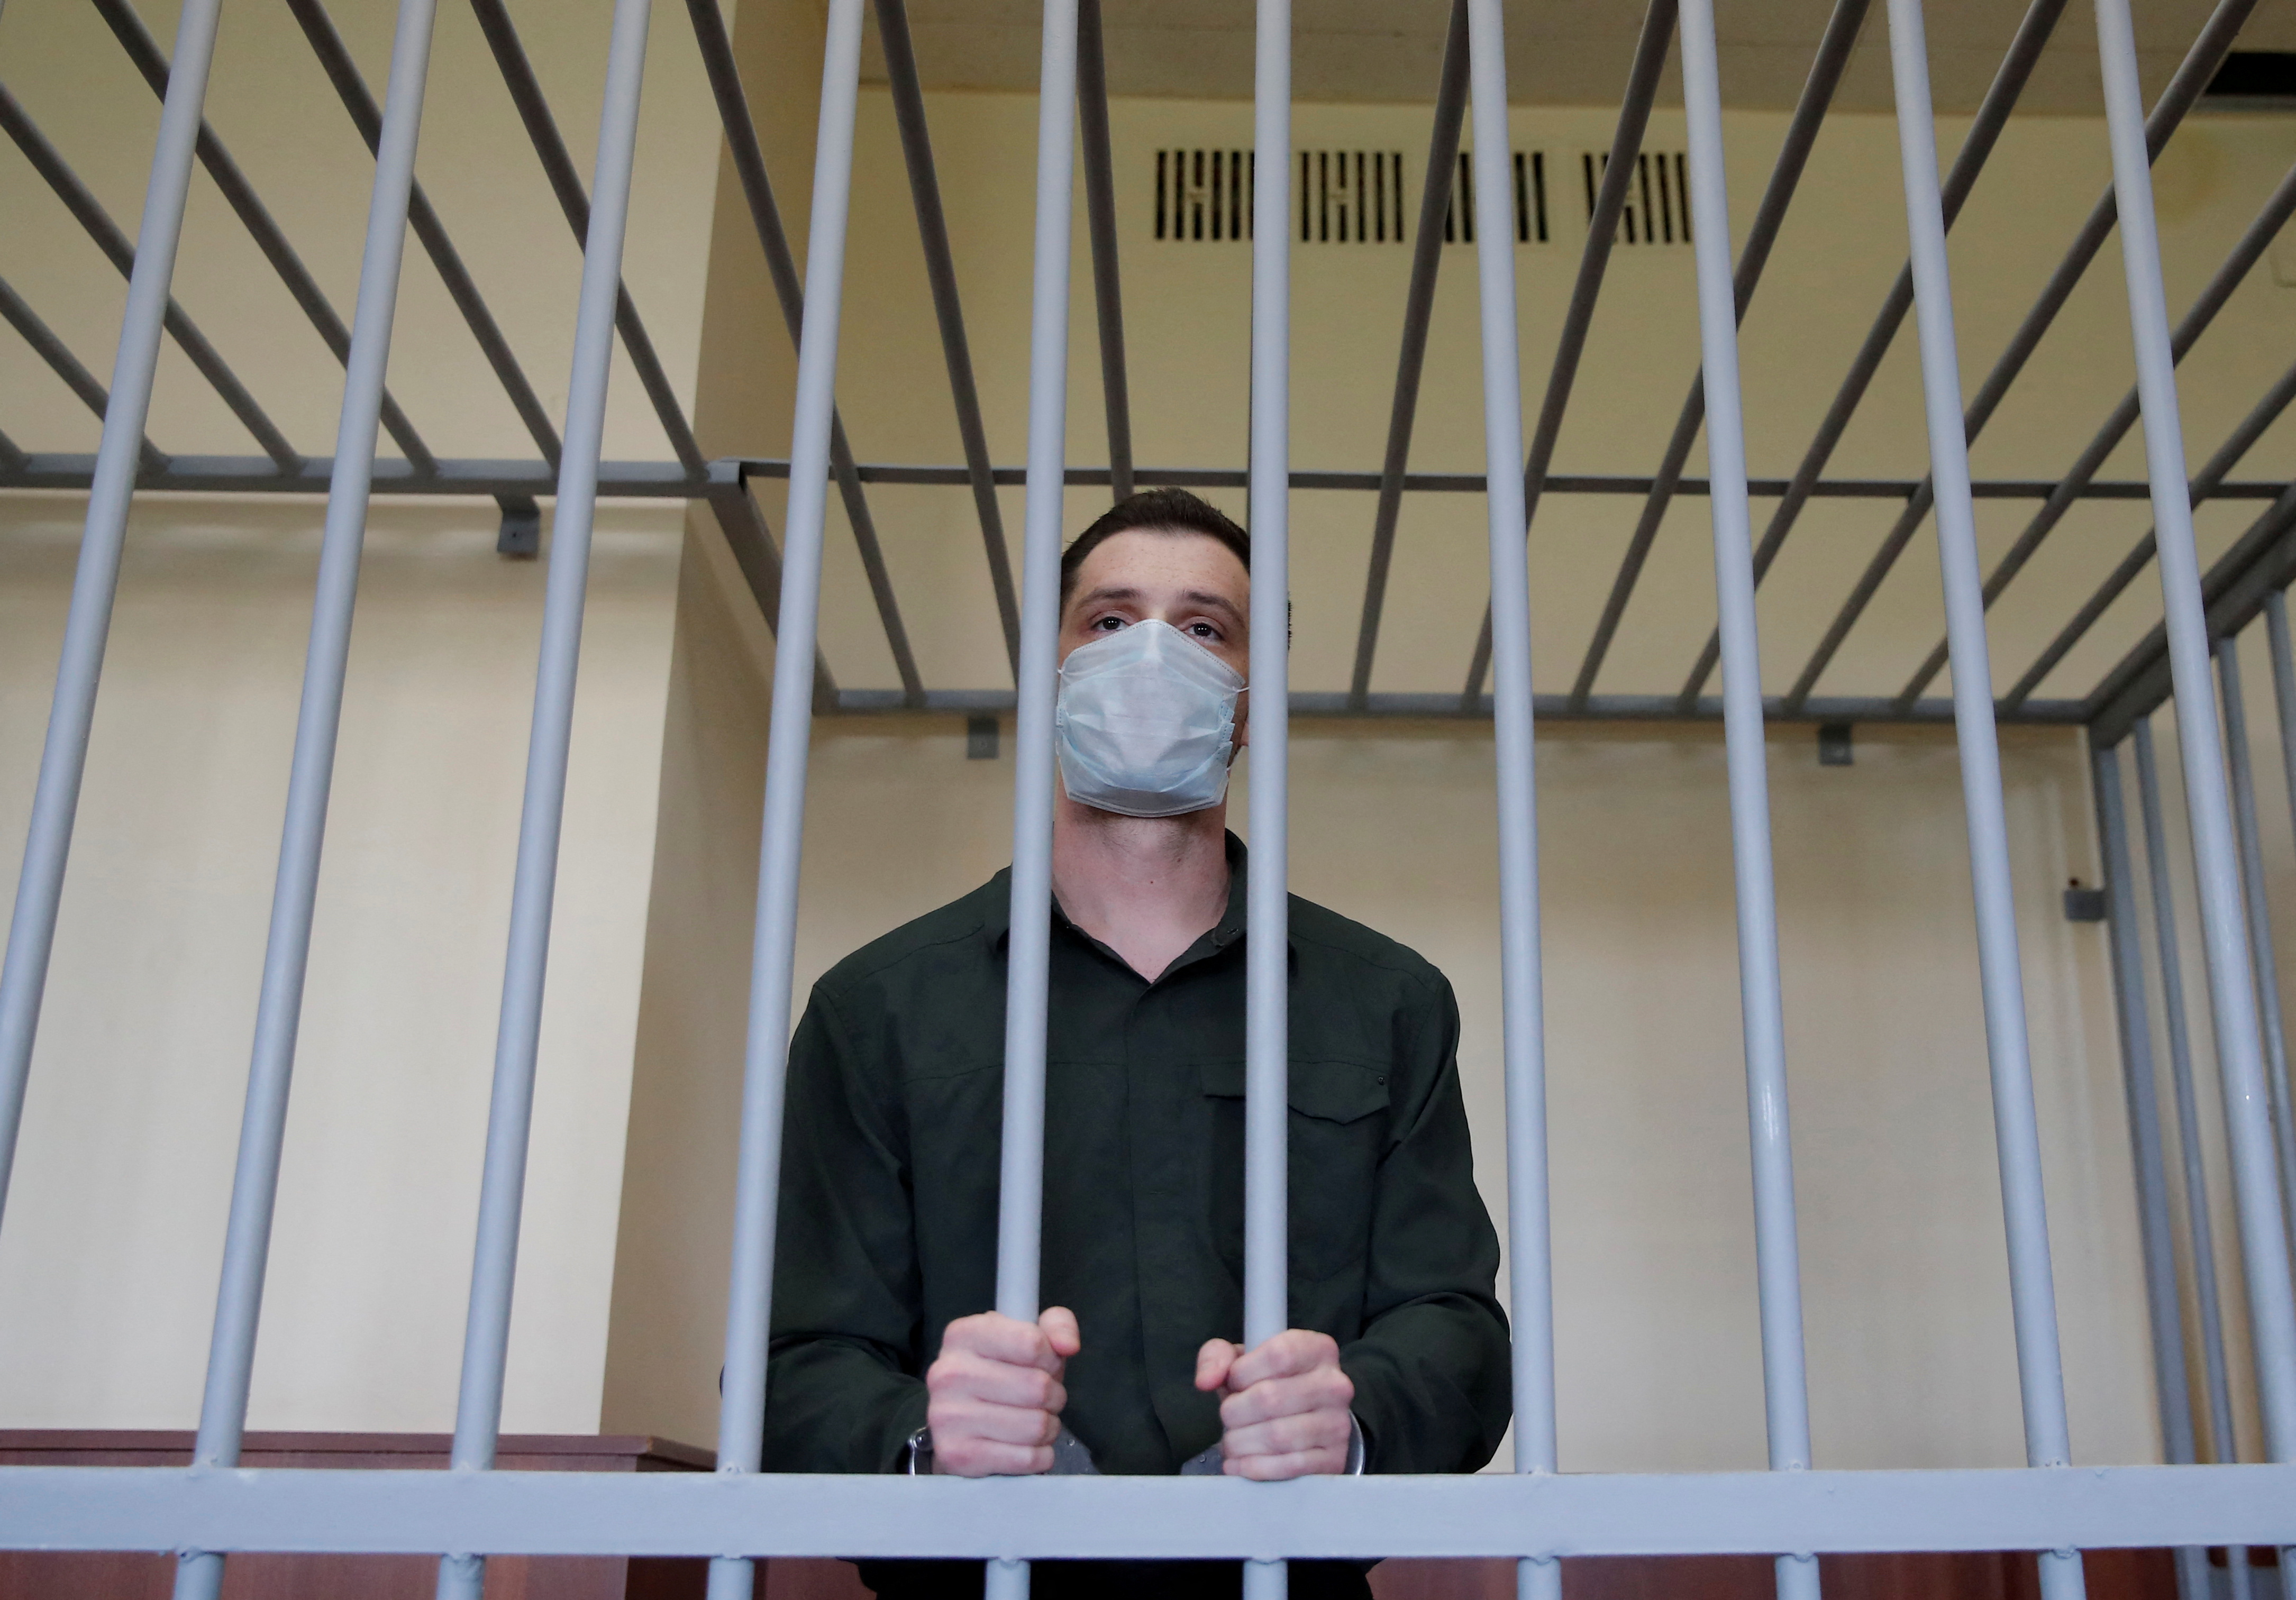 FOTO DE ARCHIVO: El exmarine estadounidense Trevor Reed, que fue detenido en 2019 y acusado de agredir a agentes de policía, permanece dentro de una jaula de acusados durante una vista judicial en Moscú, Rusia, el 30 de julio de 2020. REUTERS/Maxim Shemetov